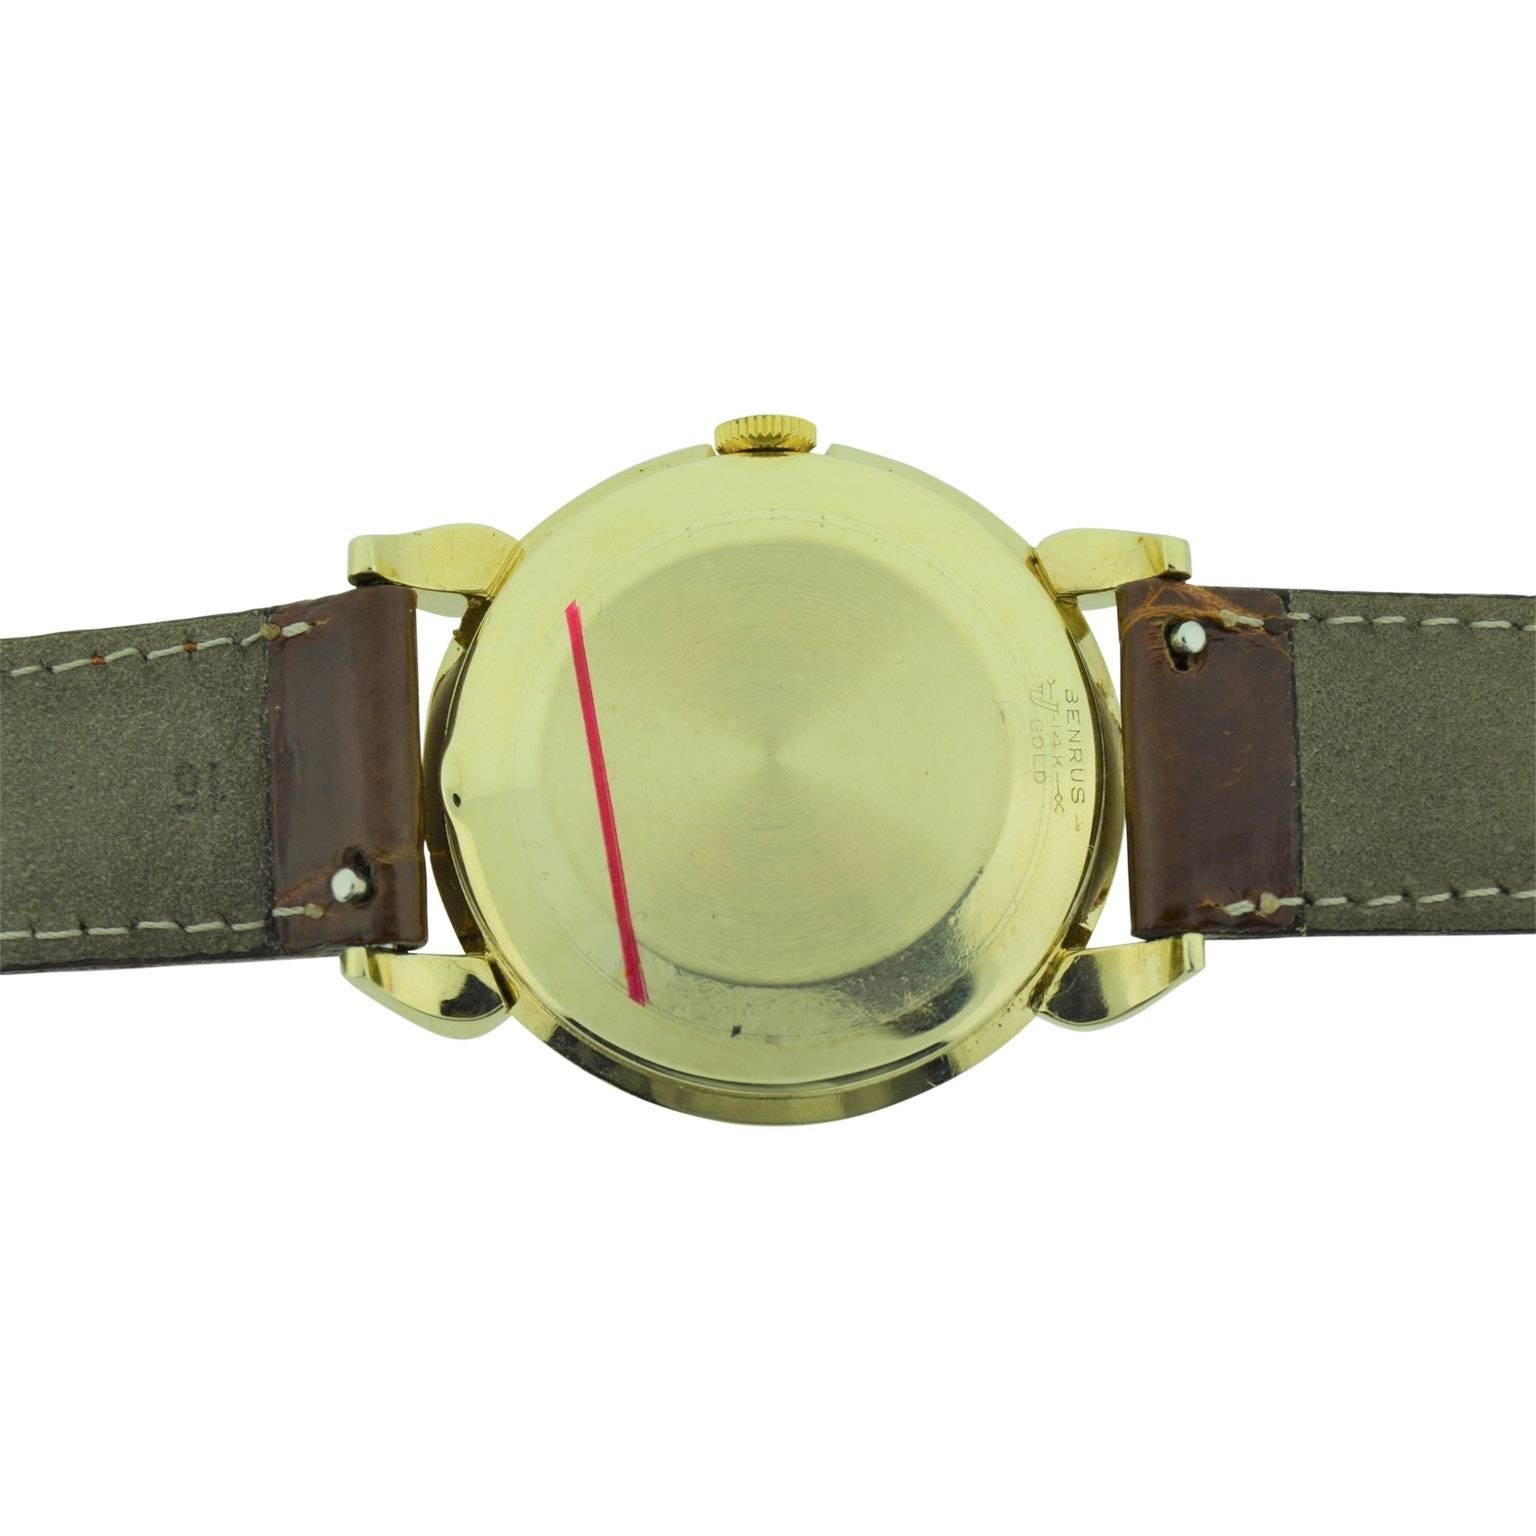 Benrus 14 Karat Yellow Gold Art Deco Wristwatch with Original Patinated Dial 1